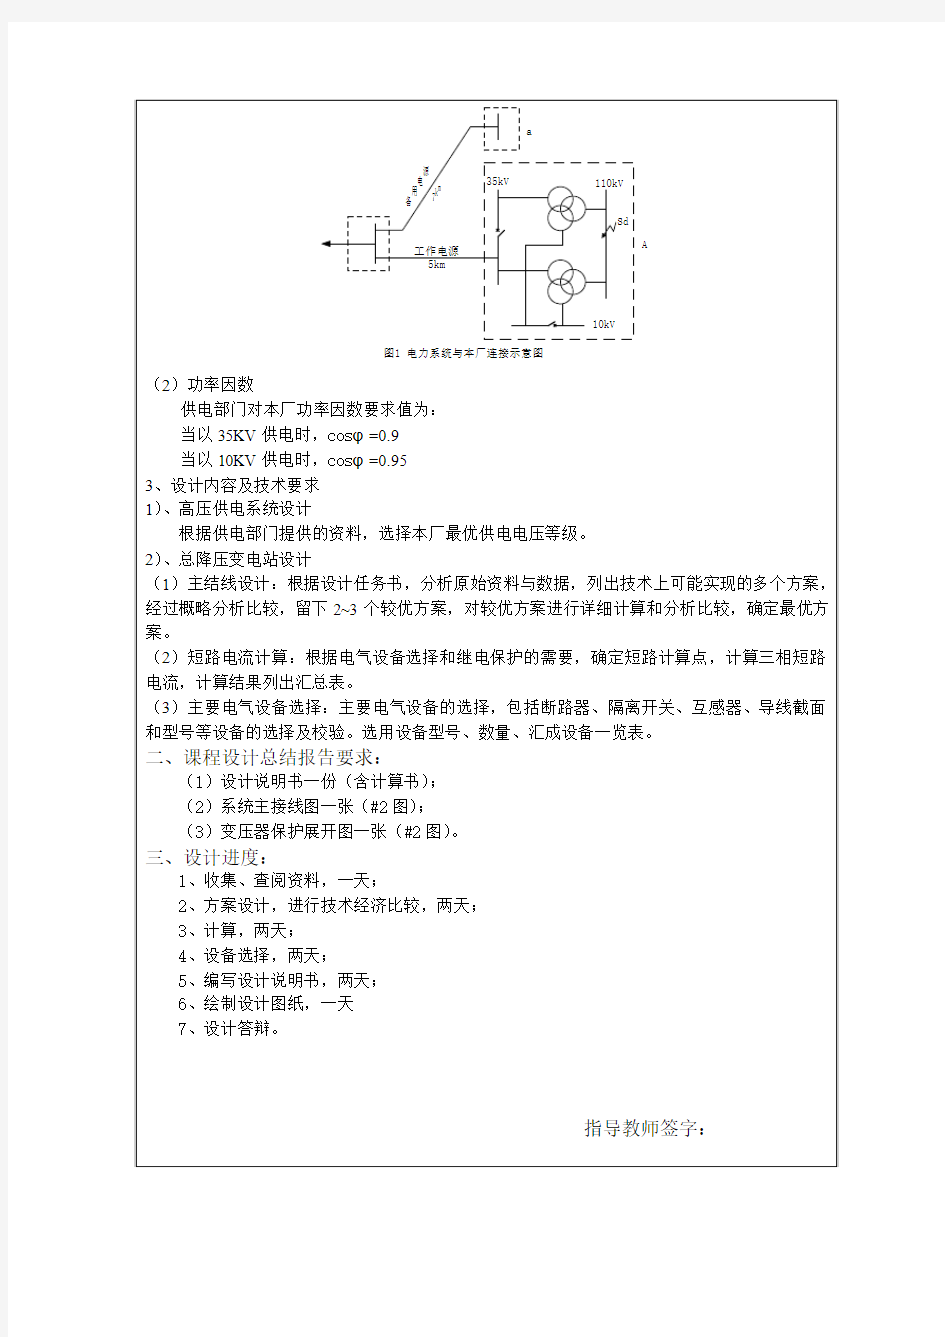 供电技术课程设计任务书1